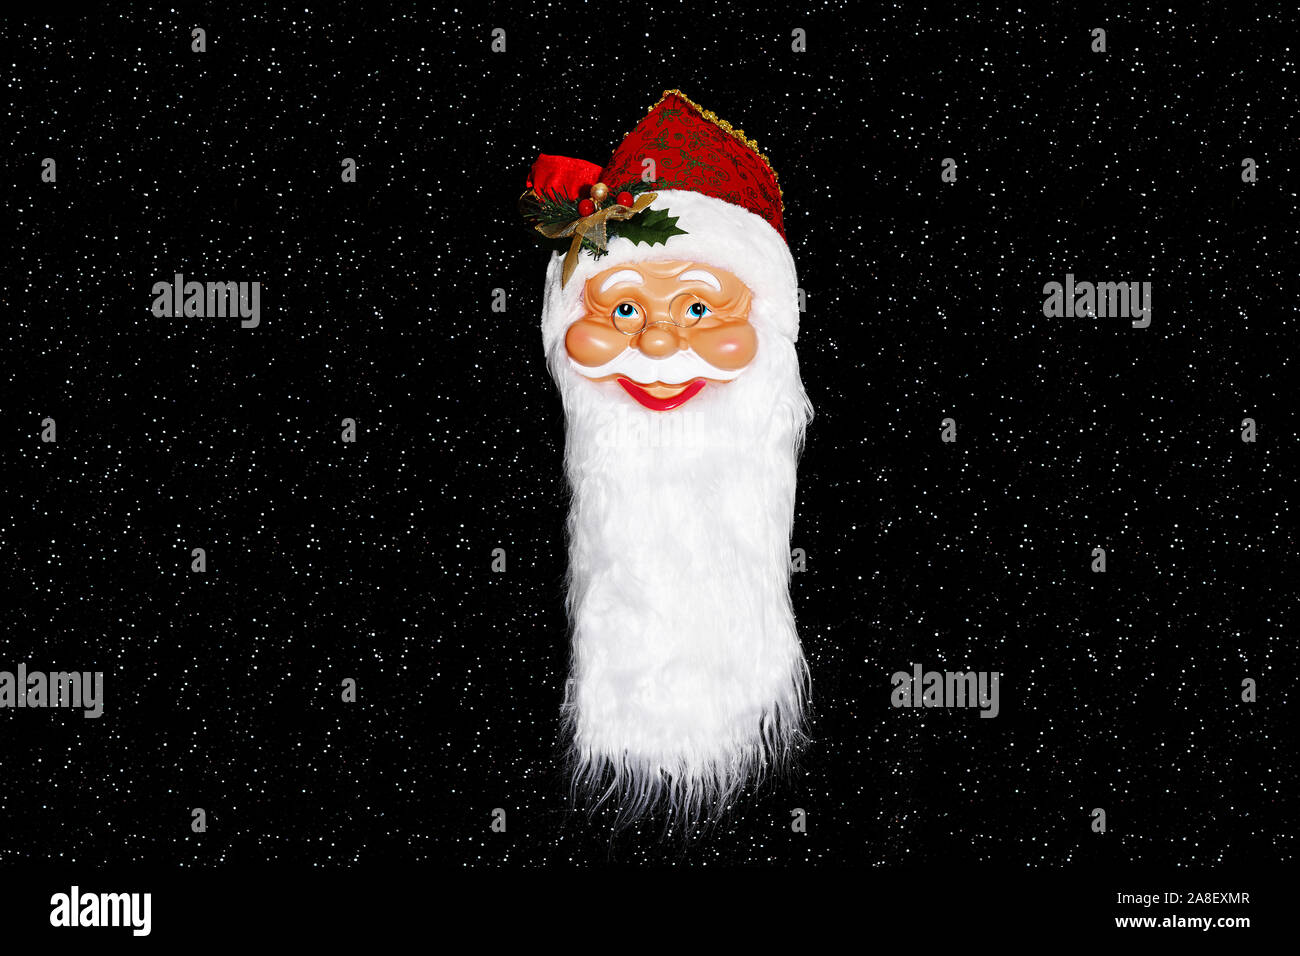 Weihnachtsmann, Santa Claus, Maske, vor Sternenhimmel, Foto de stock